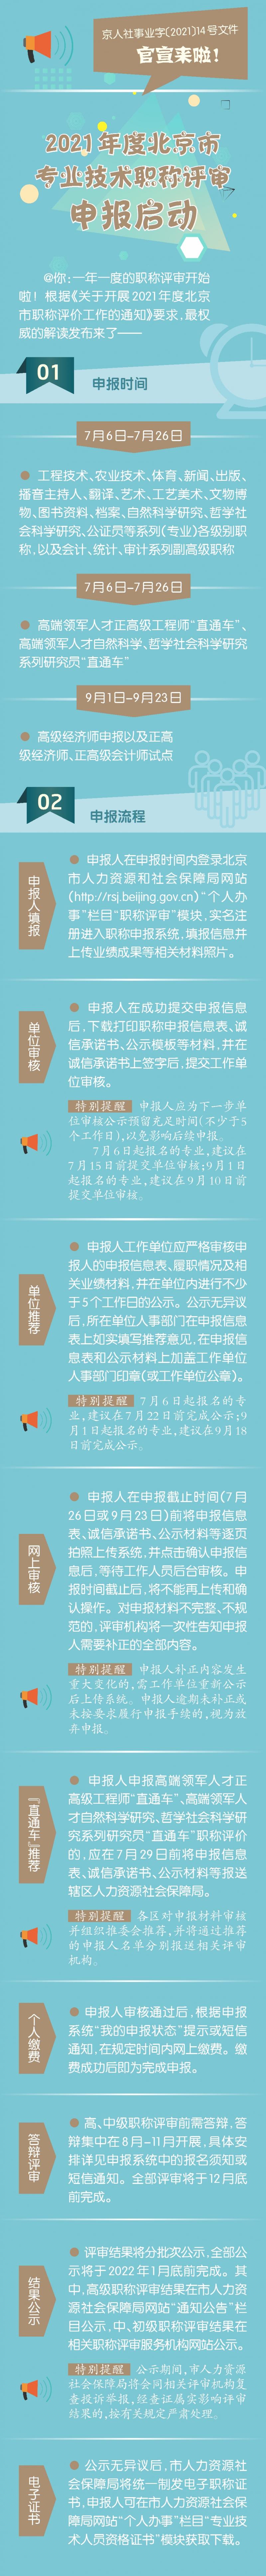 今日起北京启动2021年度职称申报工作 7个系列首次执行新申报条件